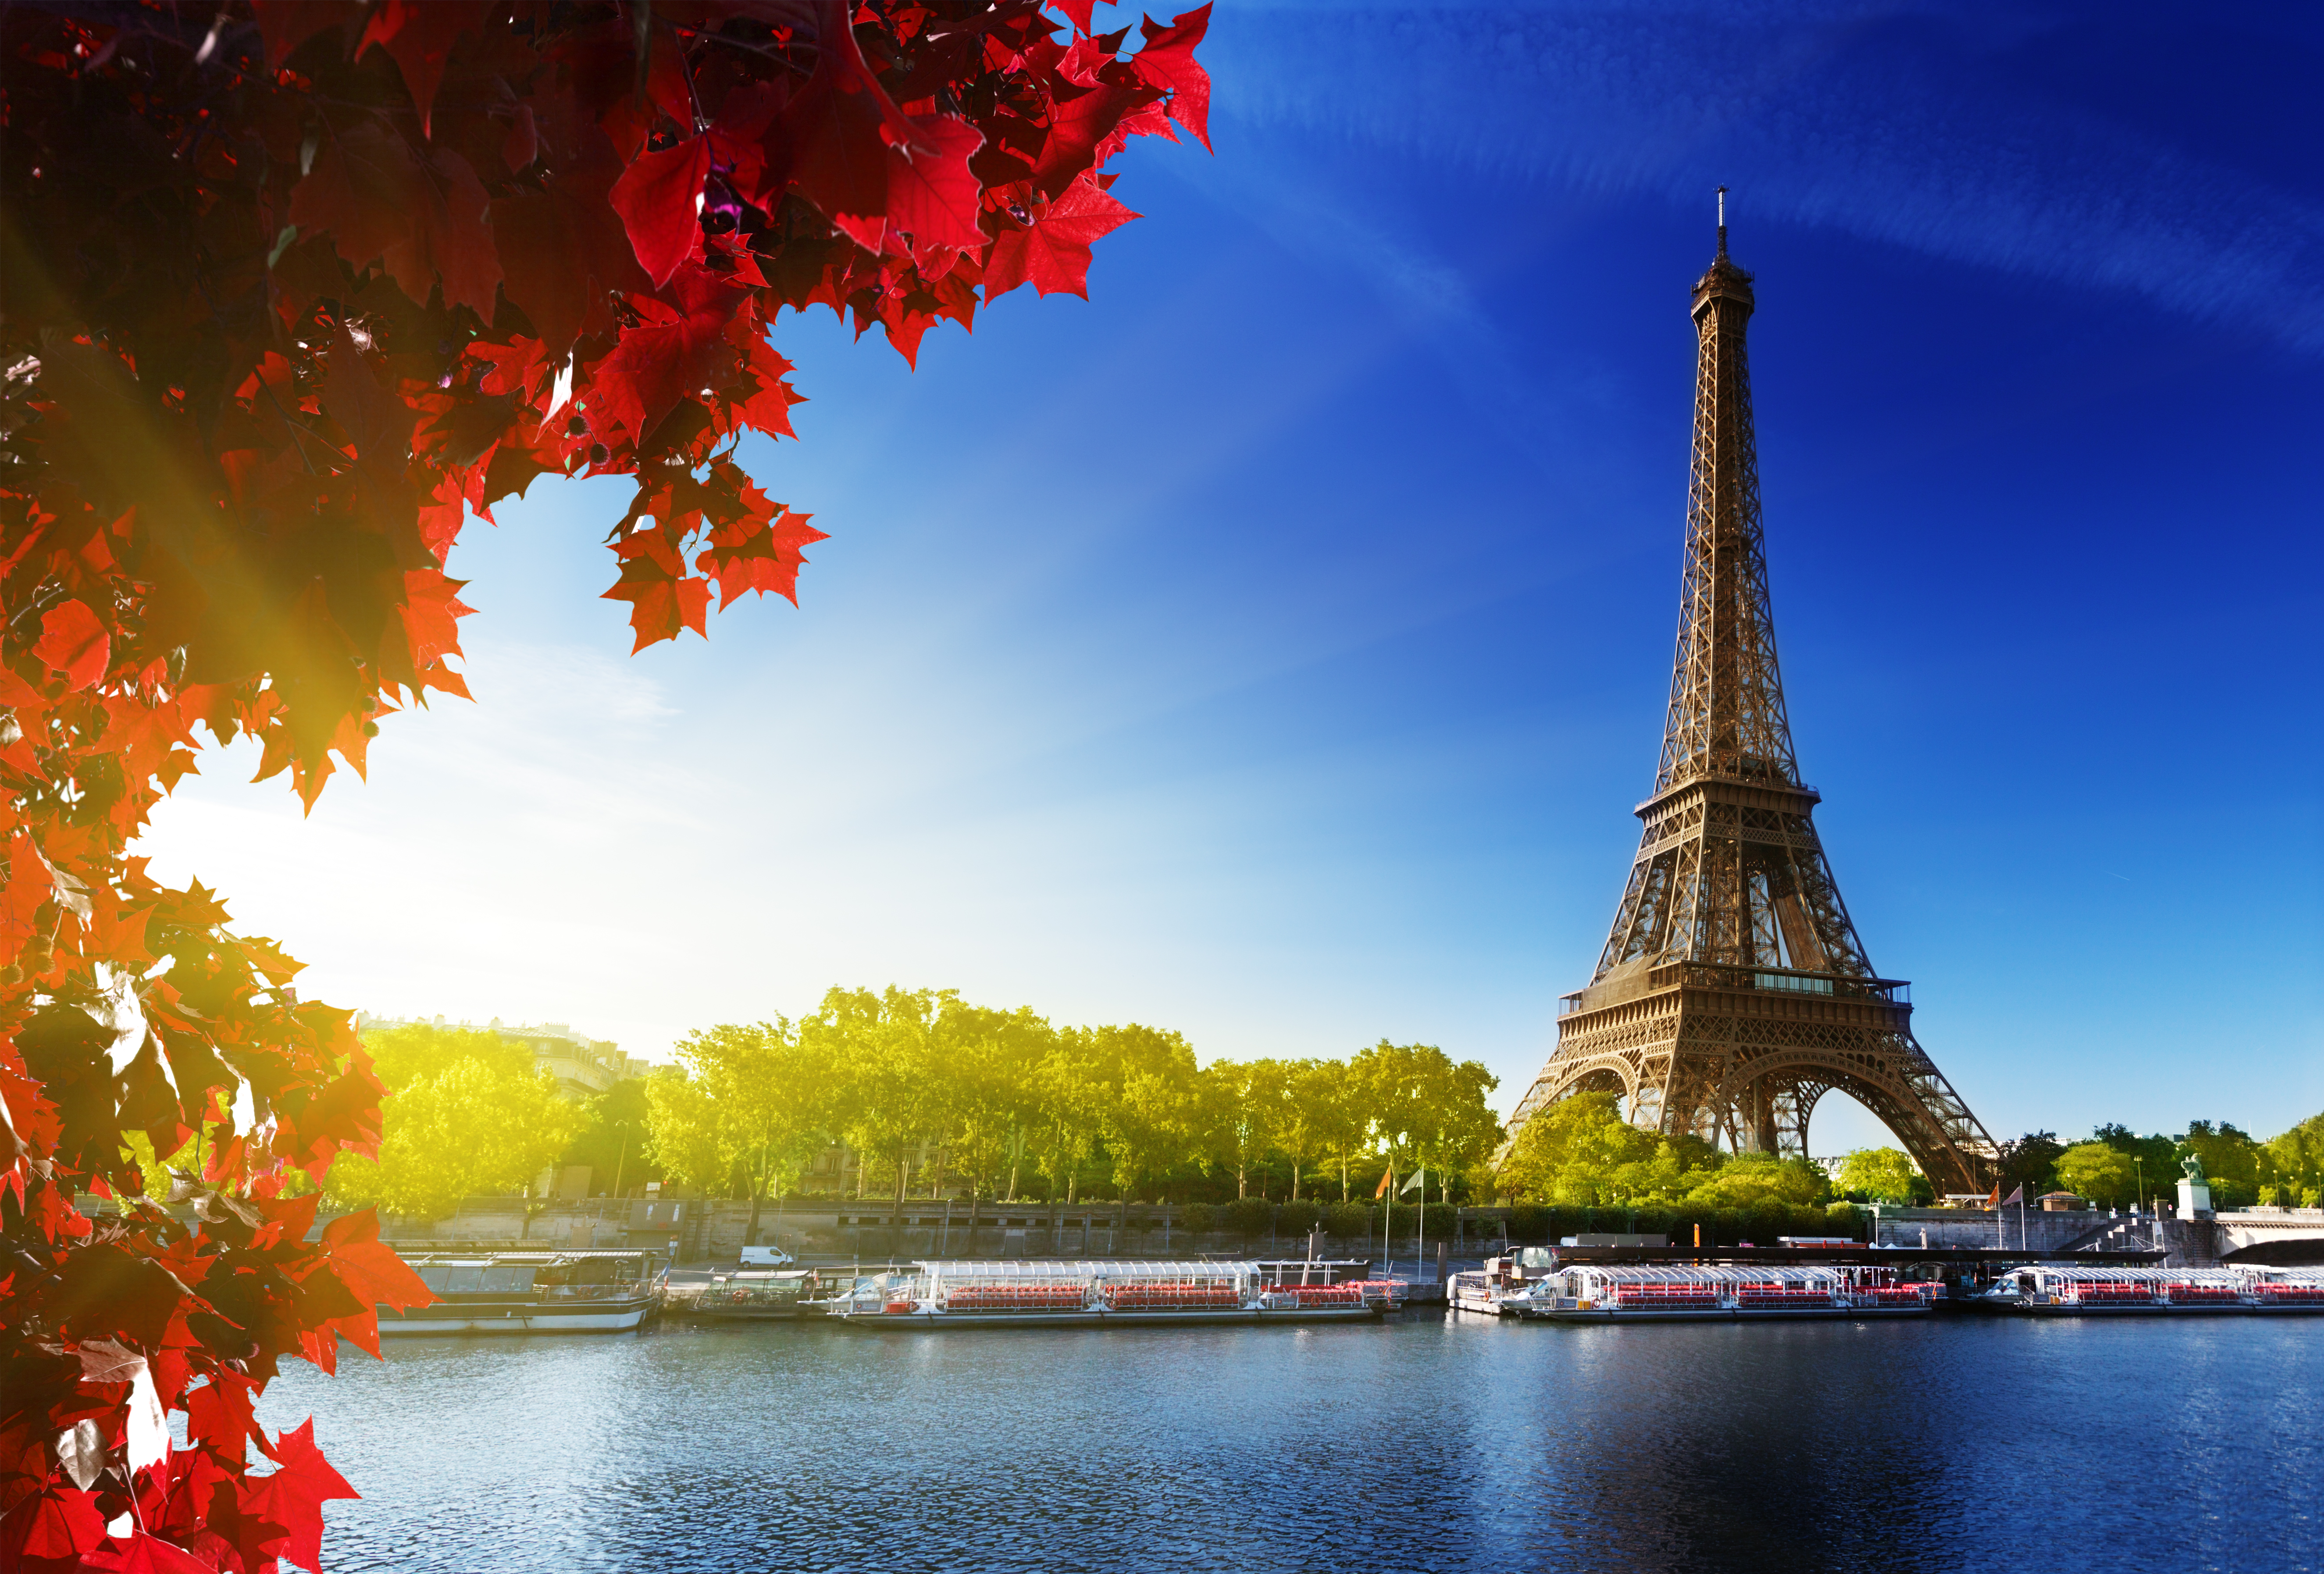 Seine in Paris with Eiffel tower, France